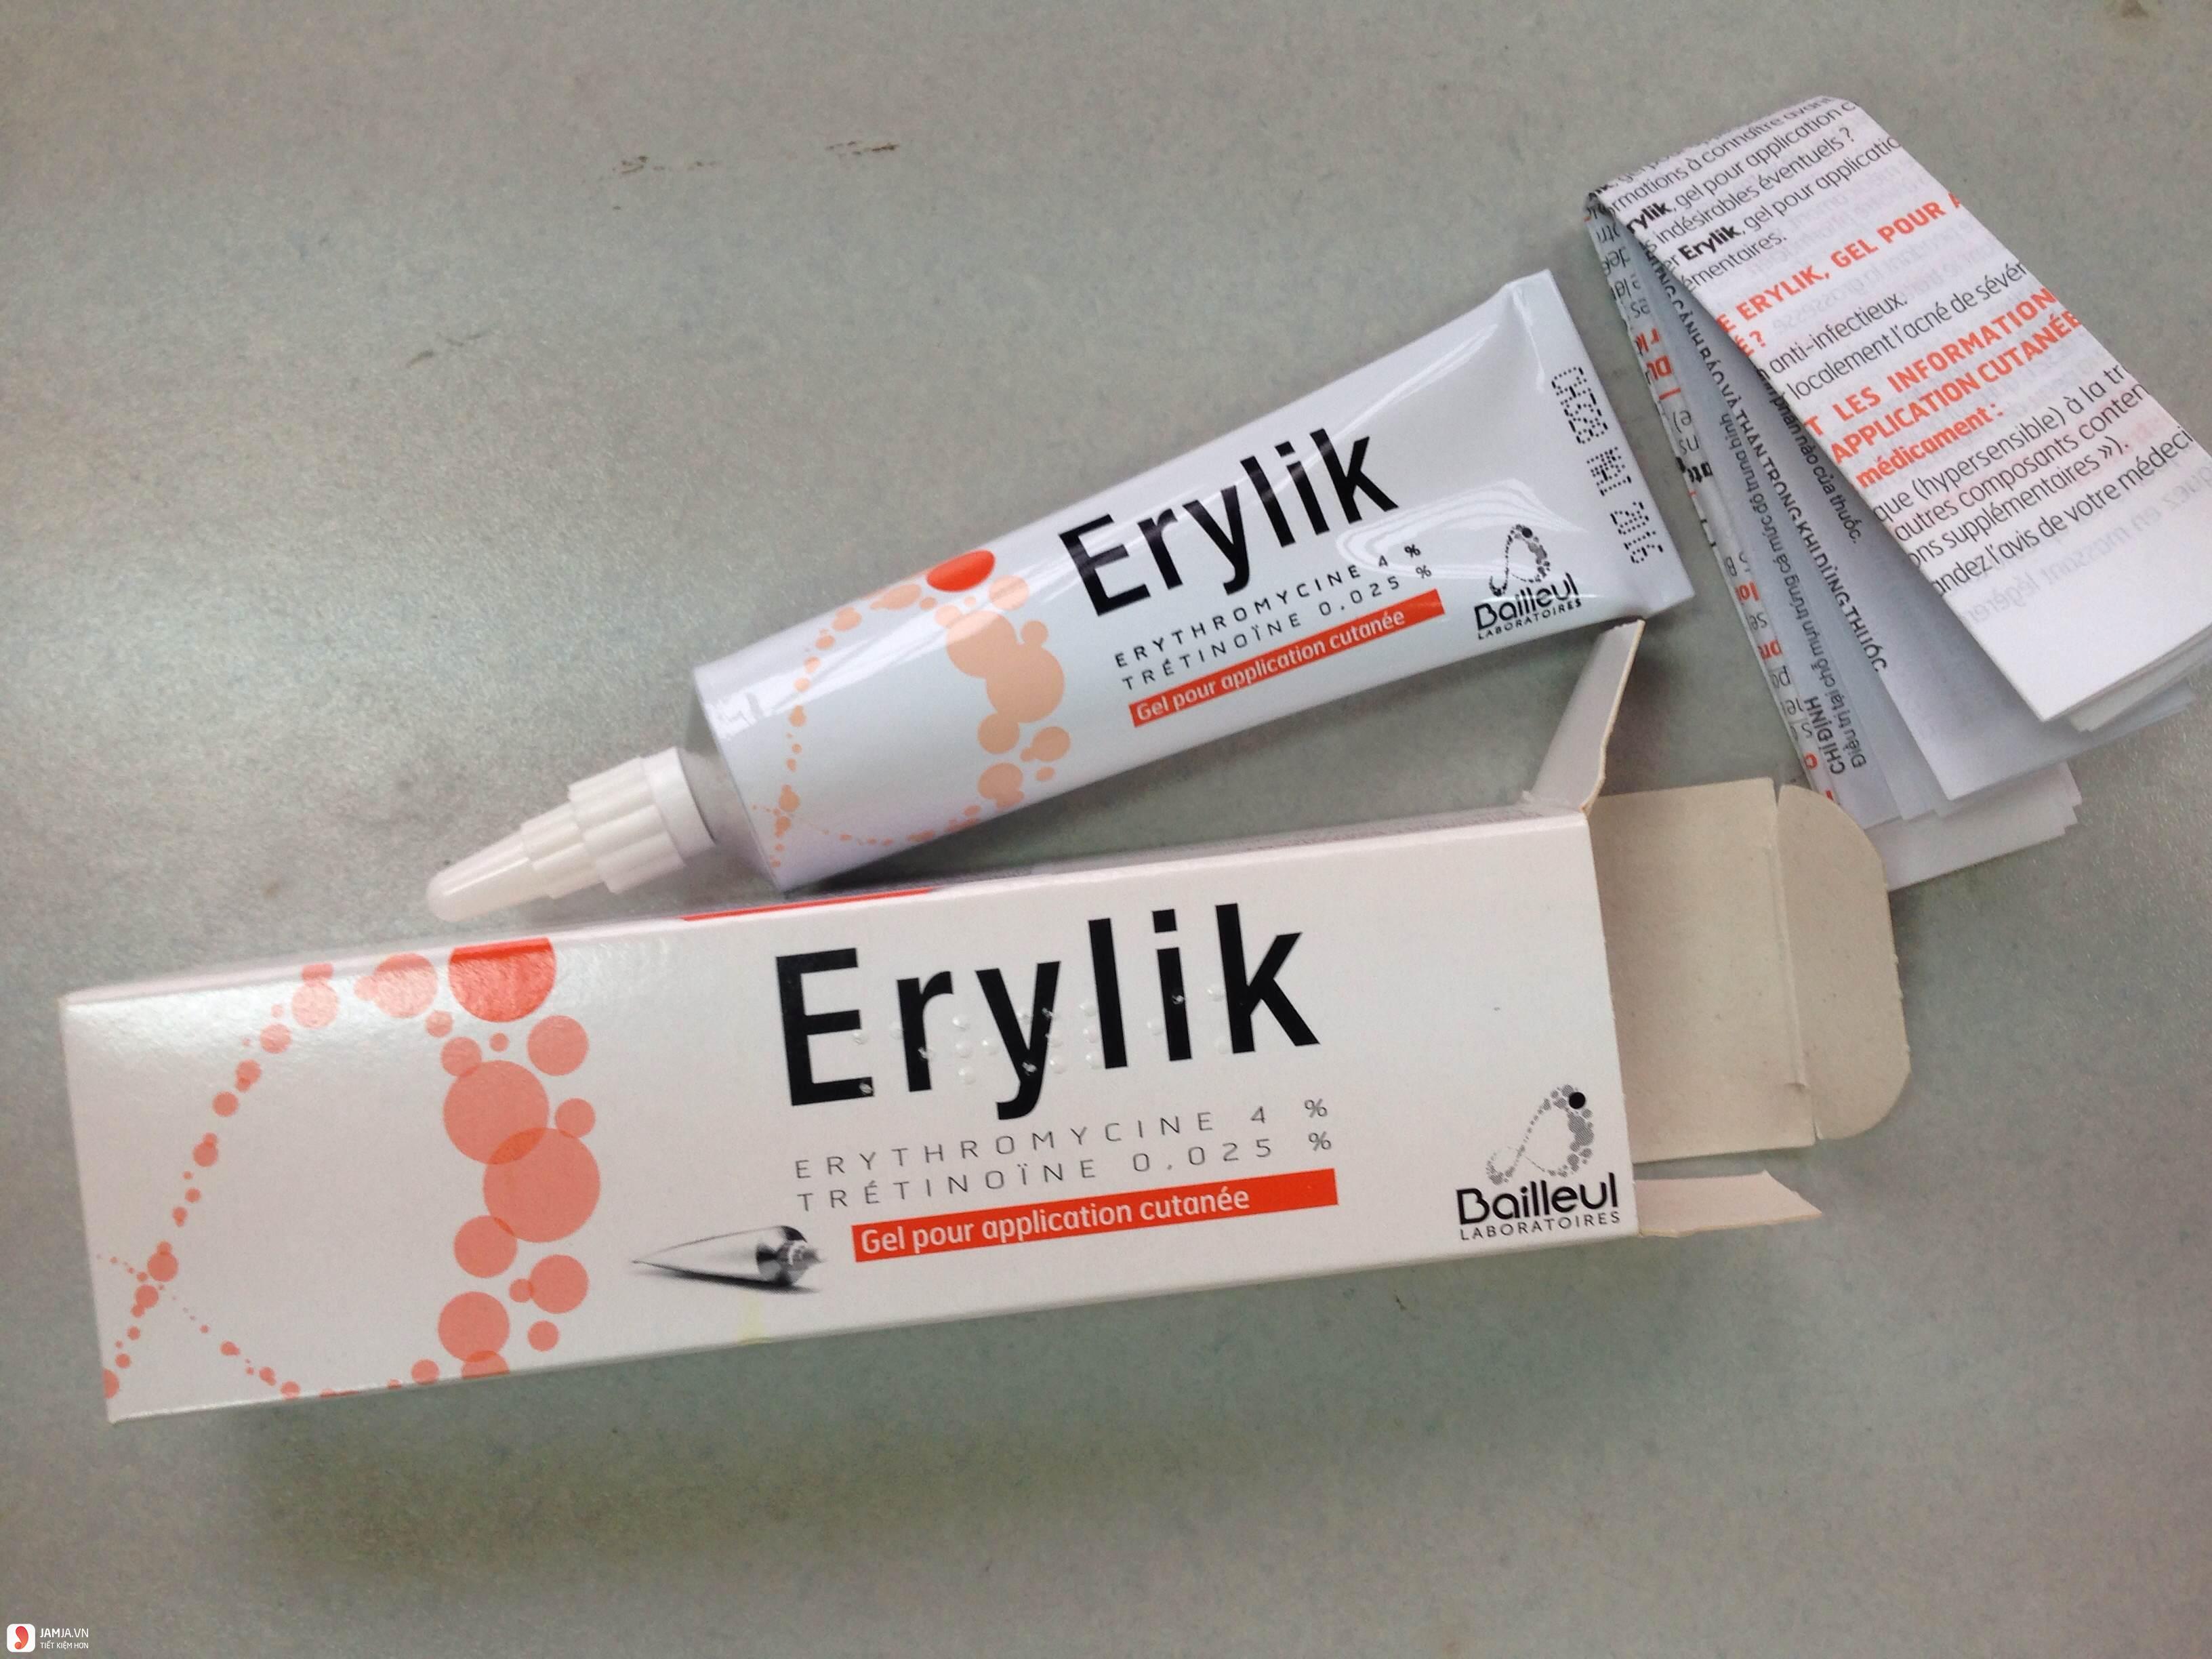 Thuốc trị mụn Erylik giá bao nhiêu? Review chi tiết